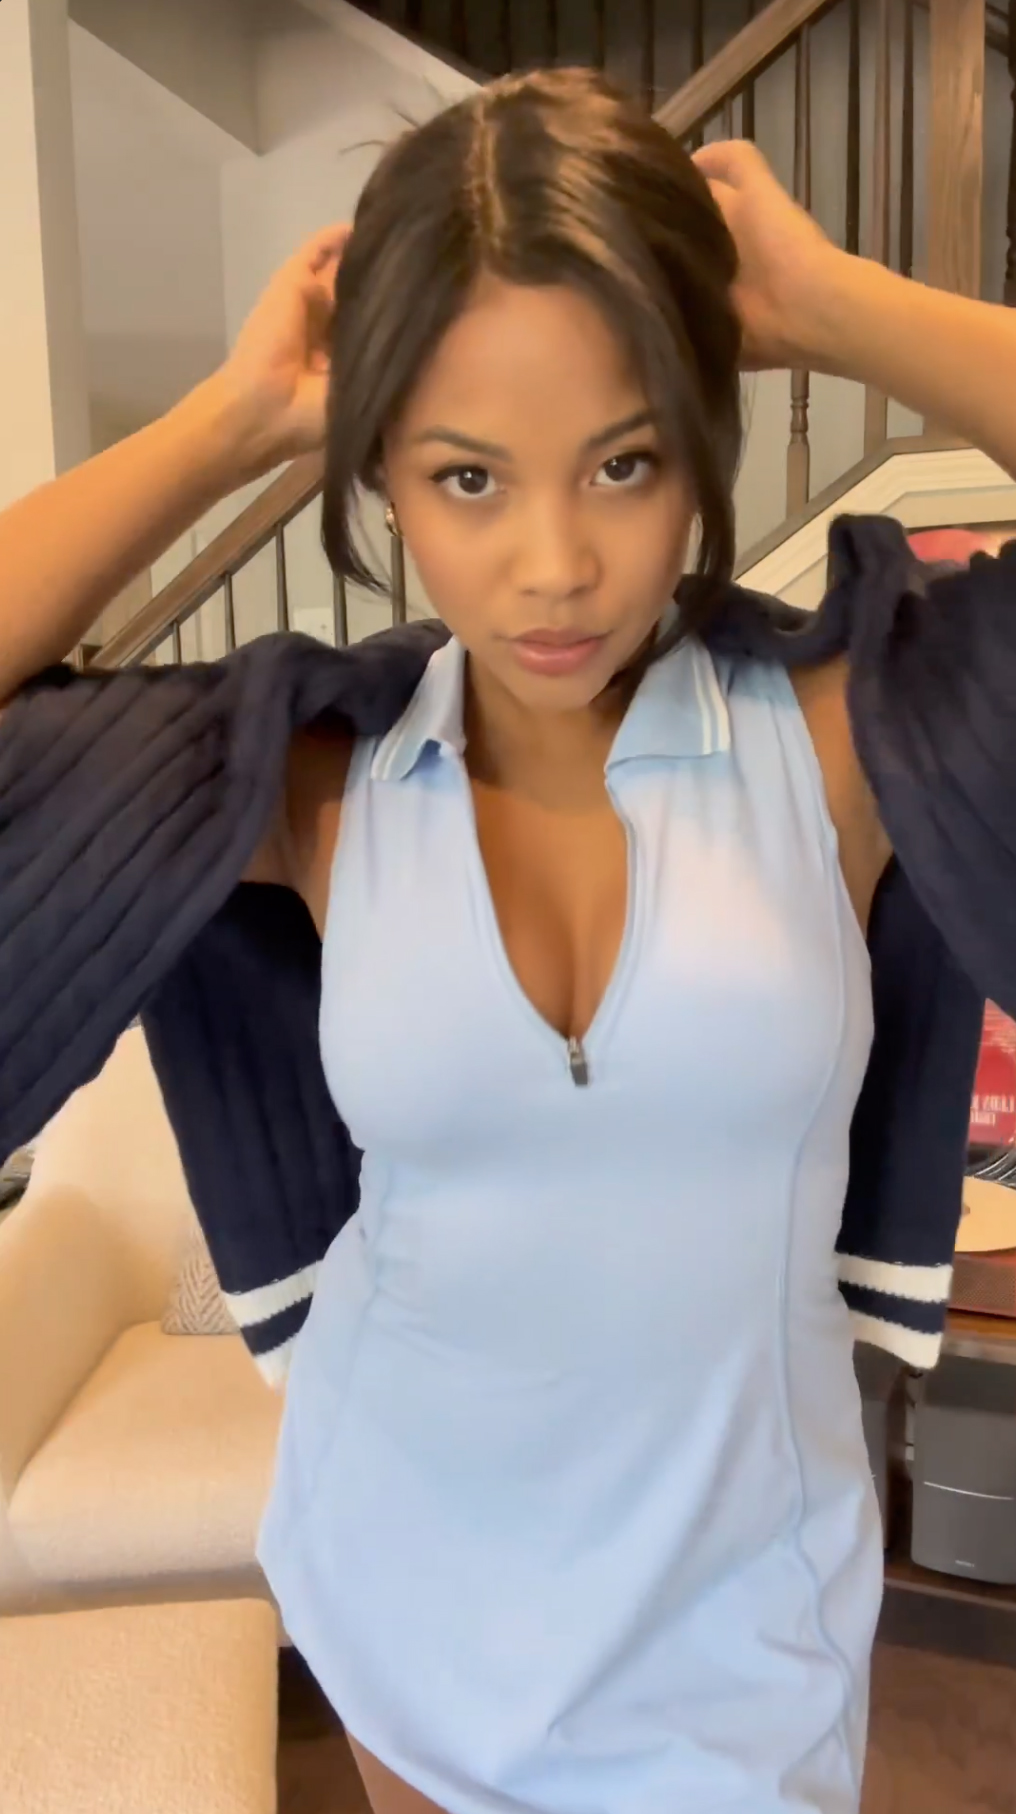 Der Social-Media-Star präsentierte ihr neuestes Golf-Outfit